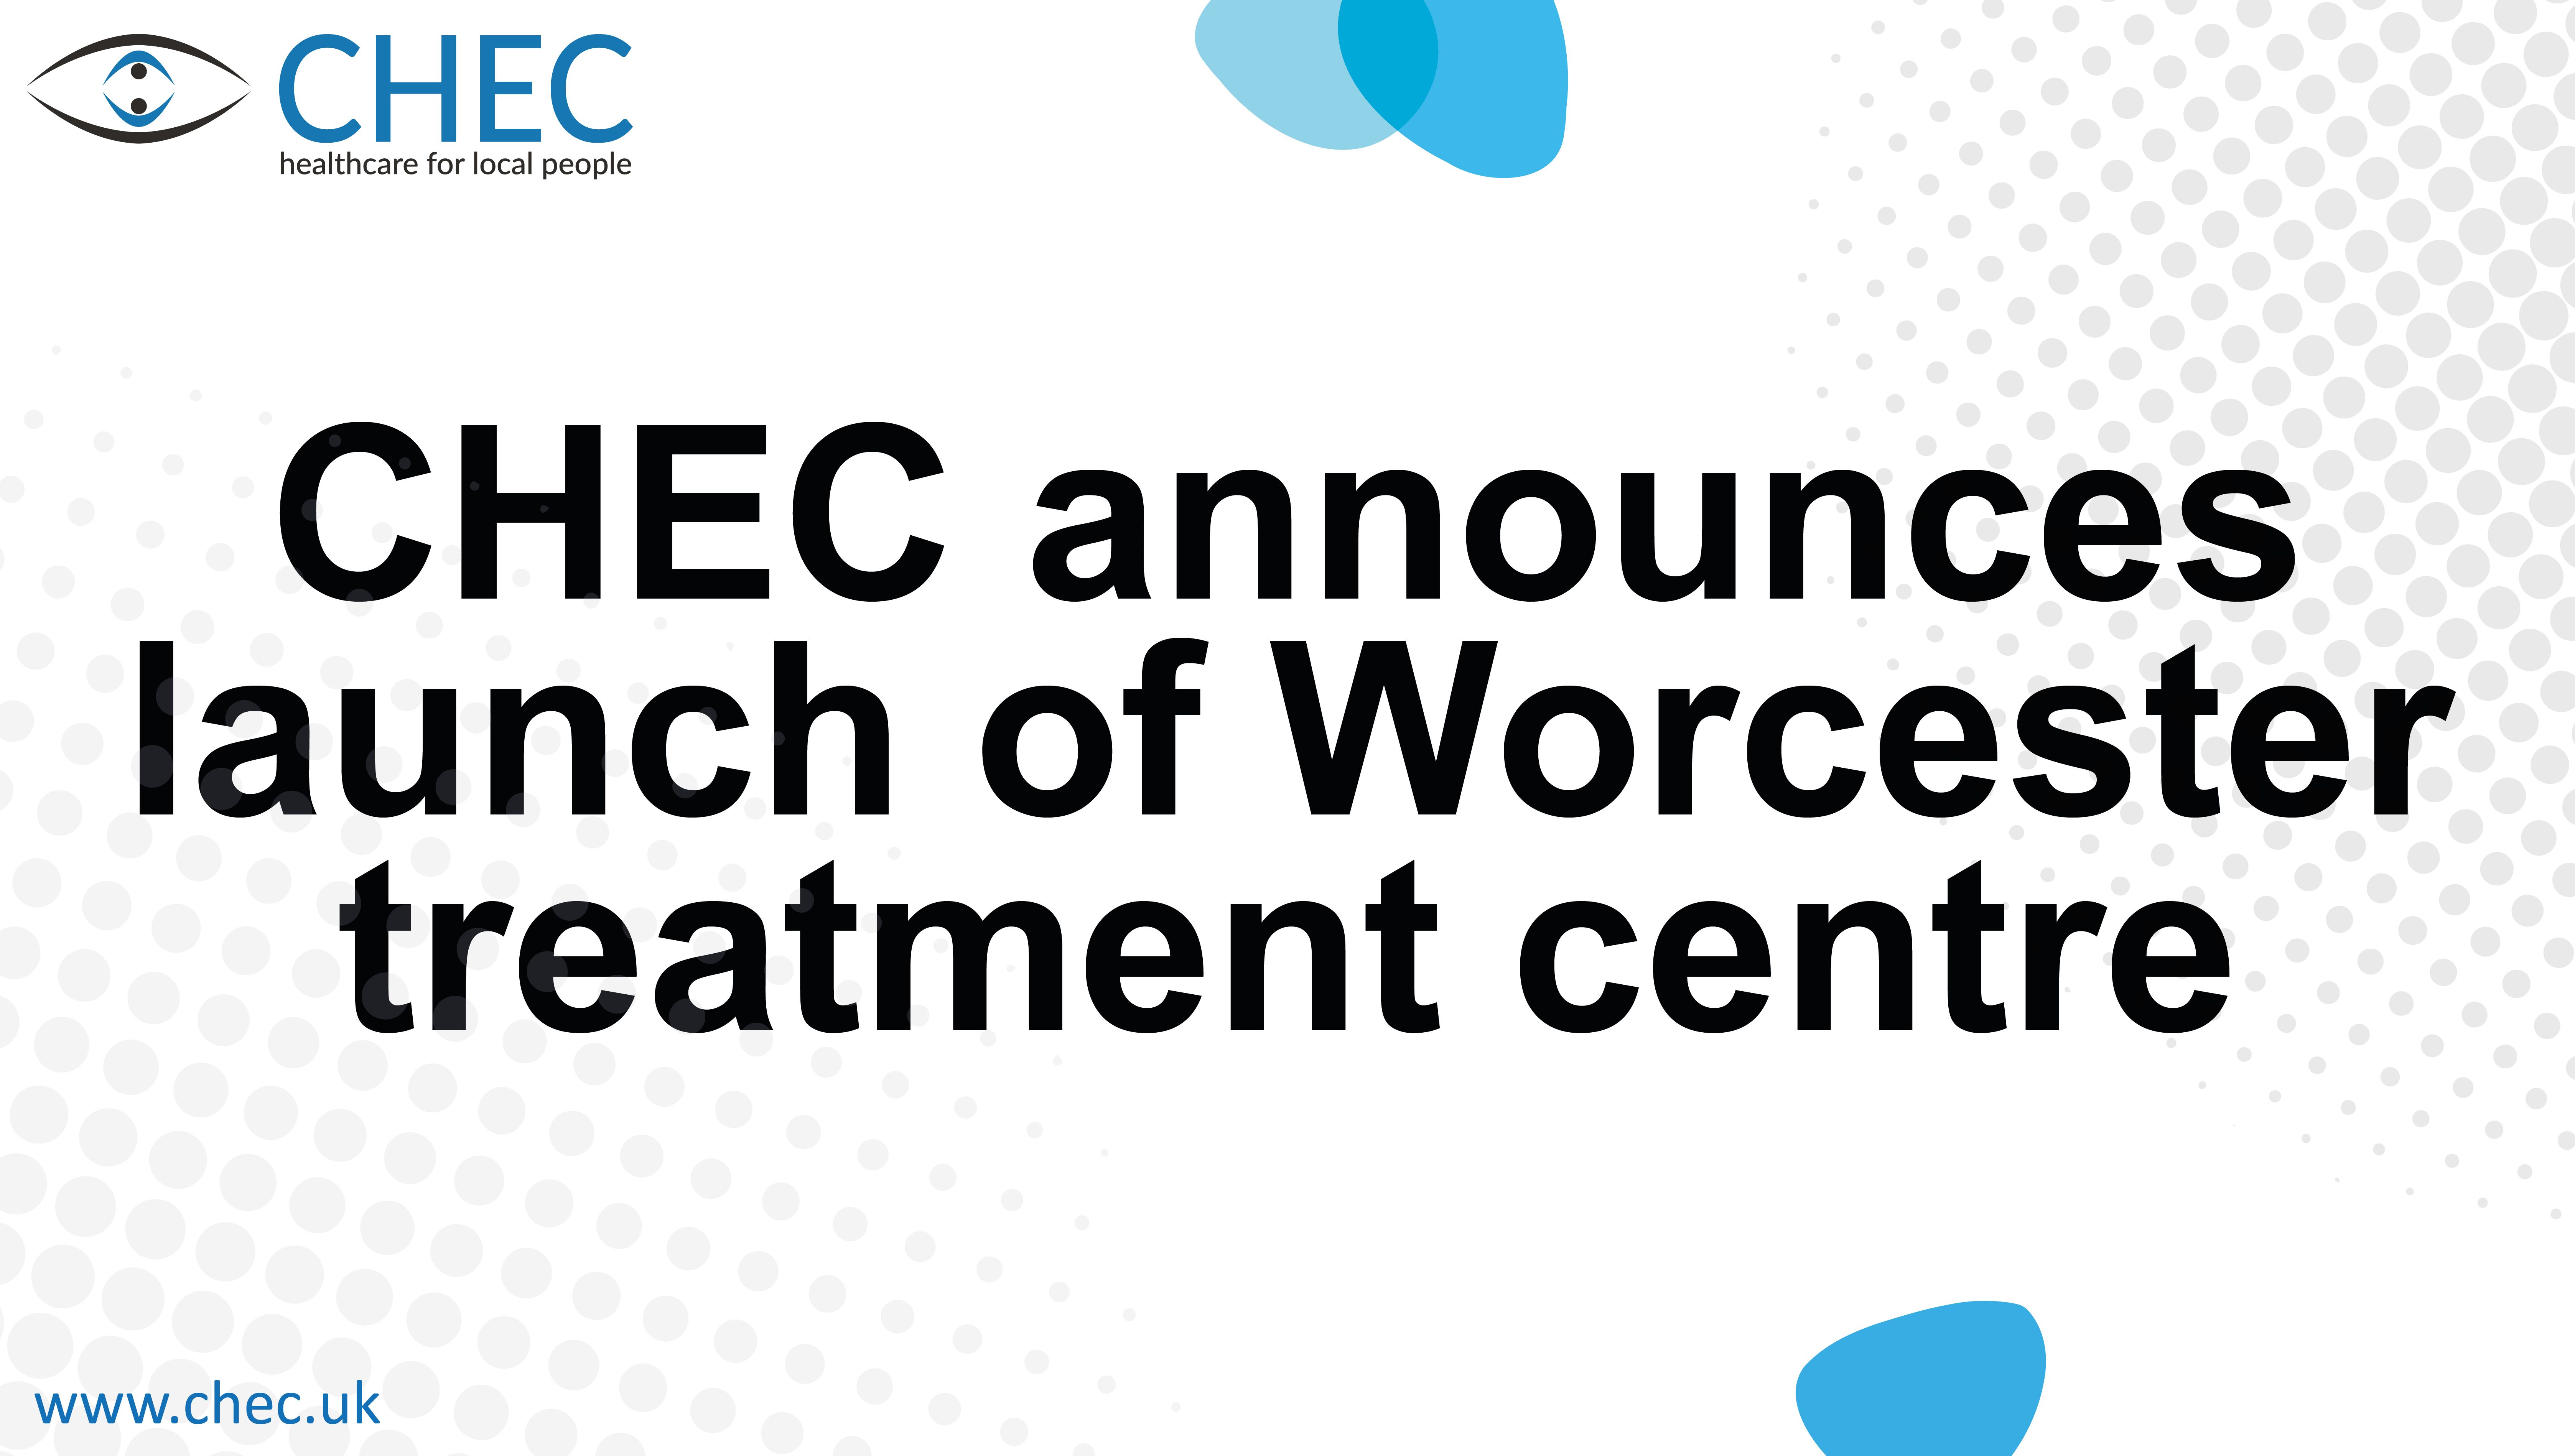 CHEC announces the launch of Worcester treatment centre